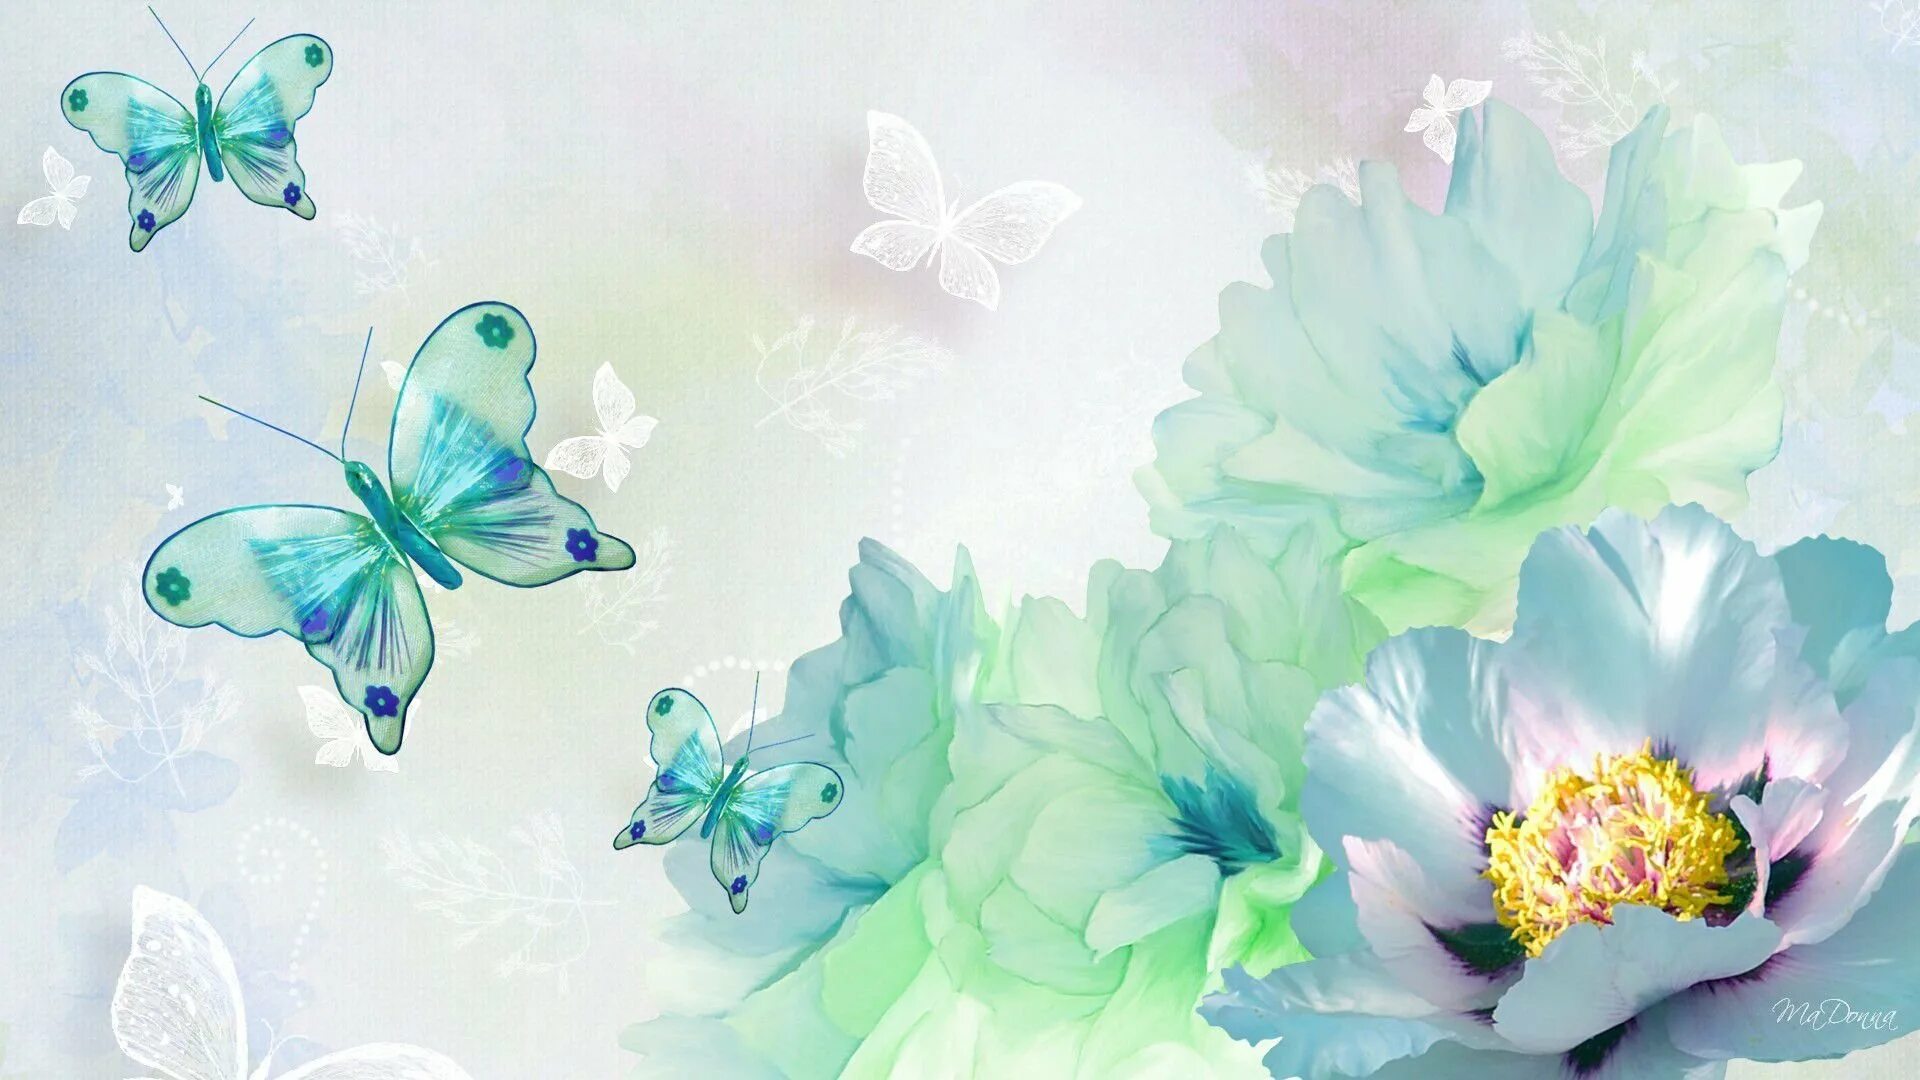 Обои фон бабочка. Бирюзовые цветы. Цветочный фон. Фон бабочки. Фотообои с бабочками и цветами.